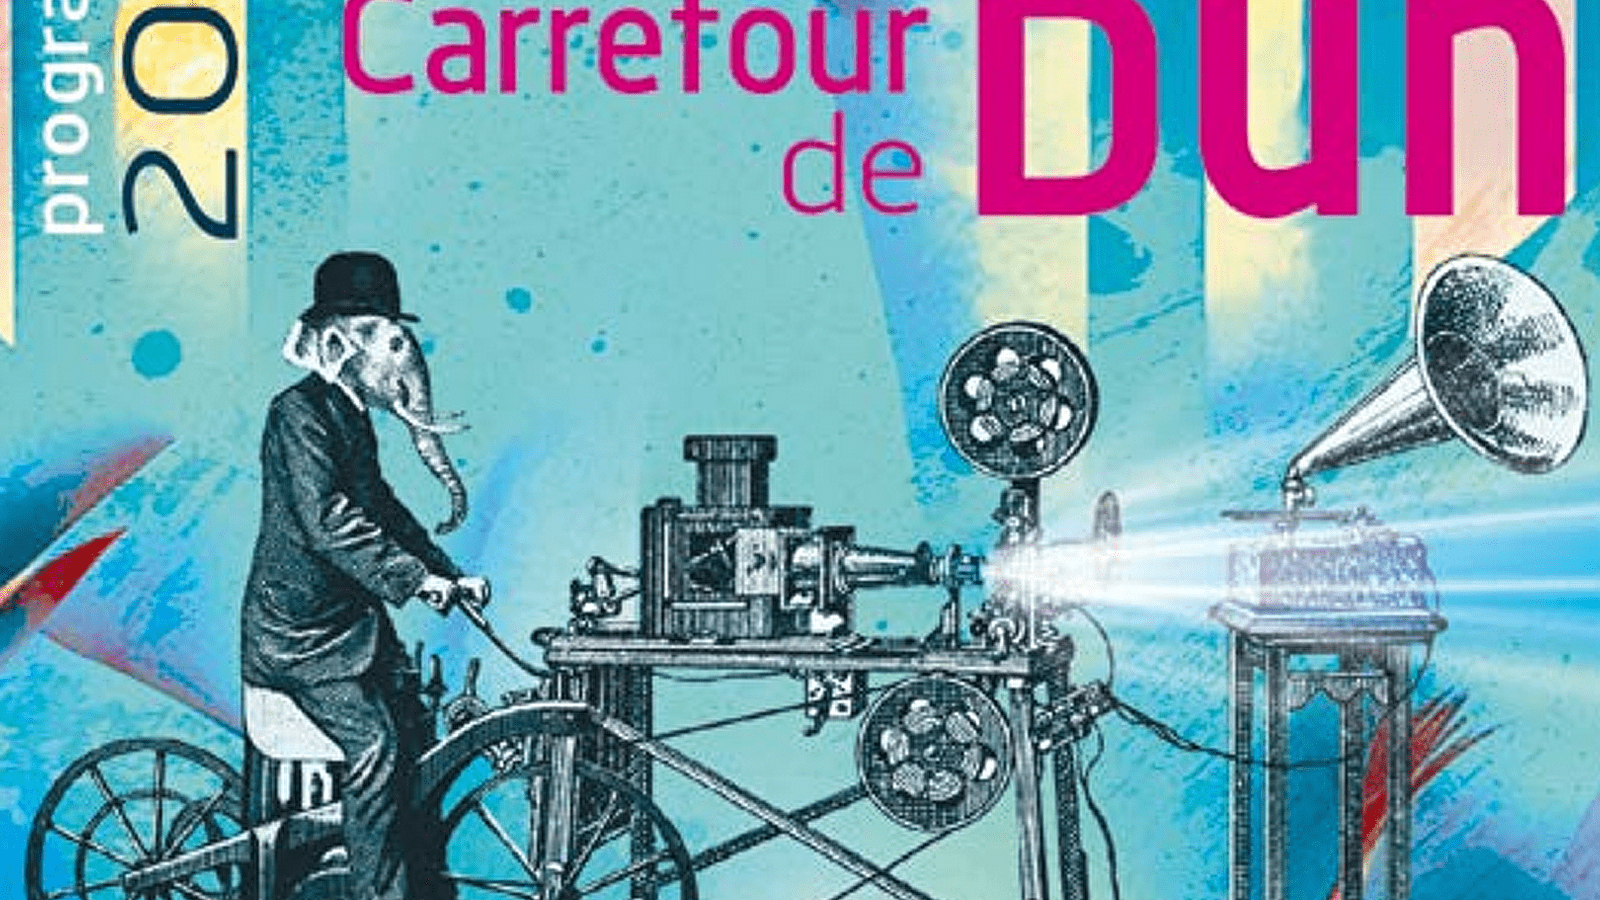 'LE JOUR DU CARREFOUR' Cinema